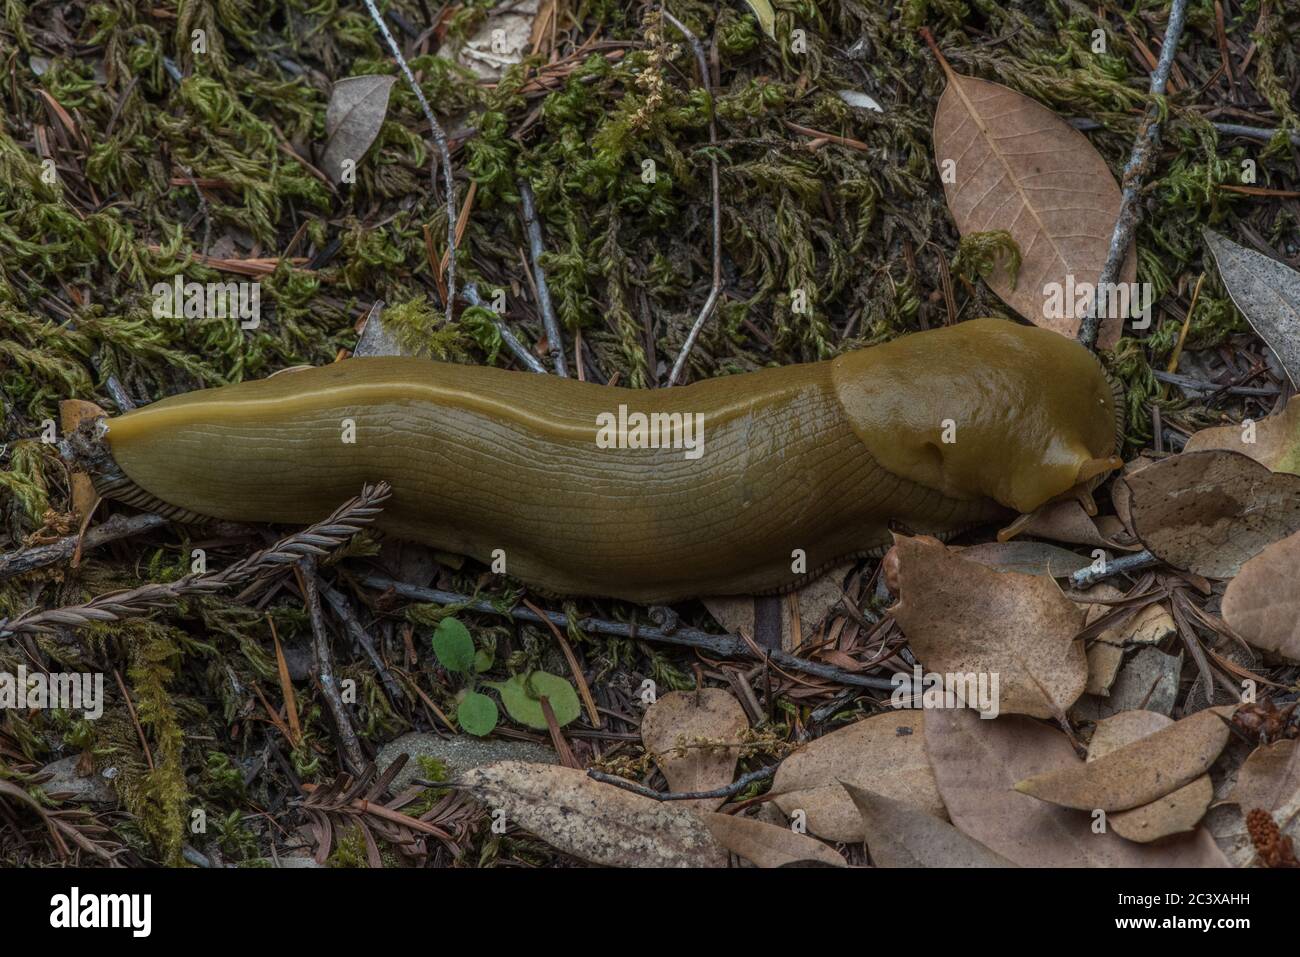 Button's Banana Slug (Ariolimax Buttoni) che si fa strada attraverso la cucciolata di foglie sul pavimento della foresta. Foto Stock